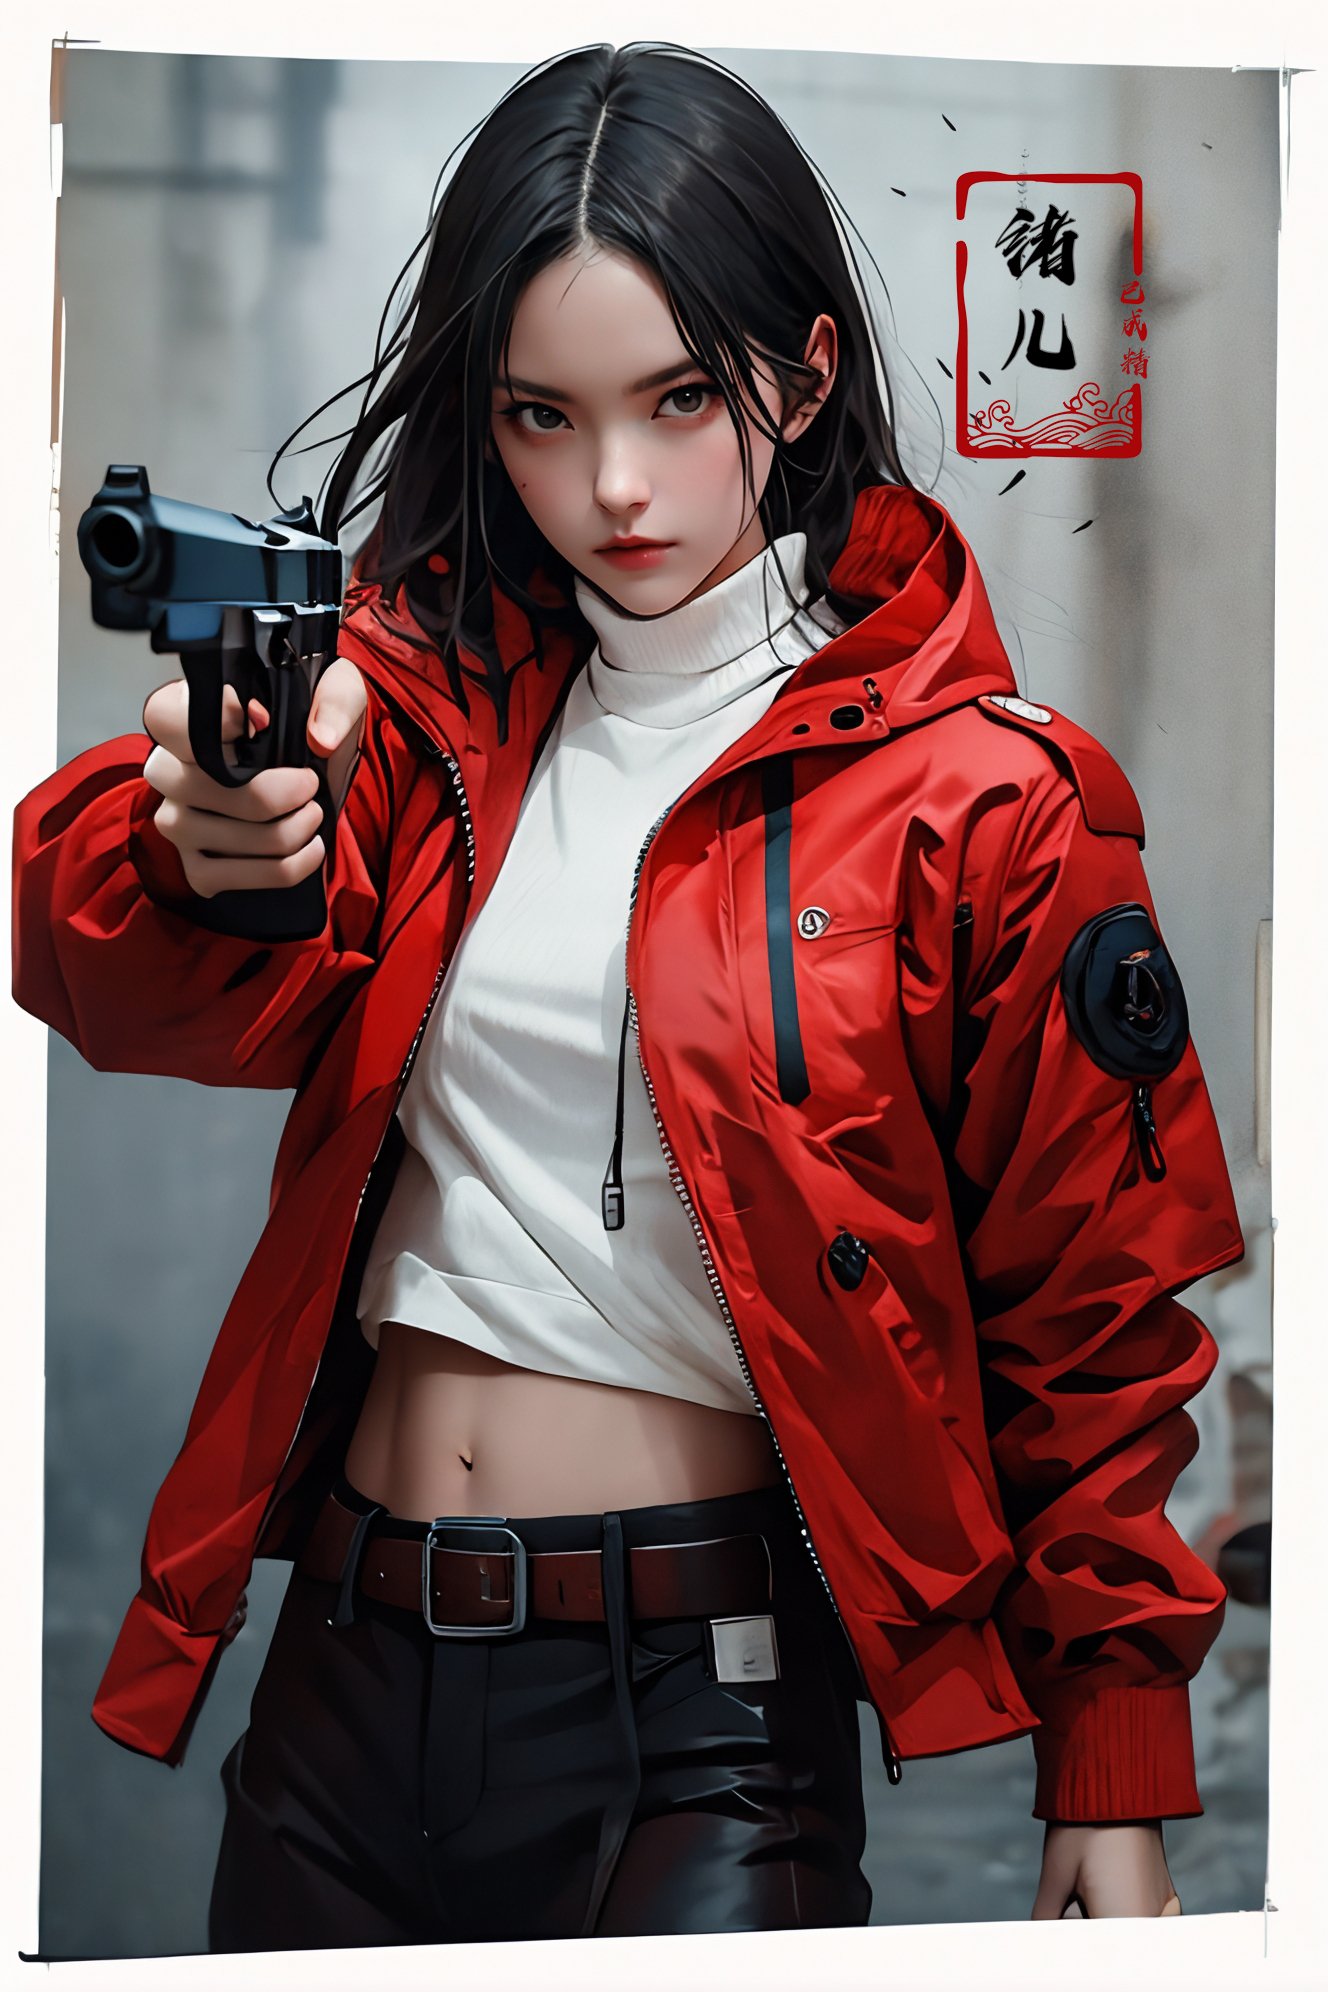 xuer pistol,red jacket,<lora:绪儿-手枪 xuer pistol:0.8>